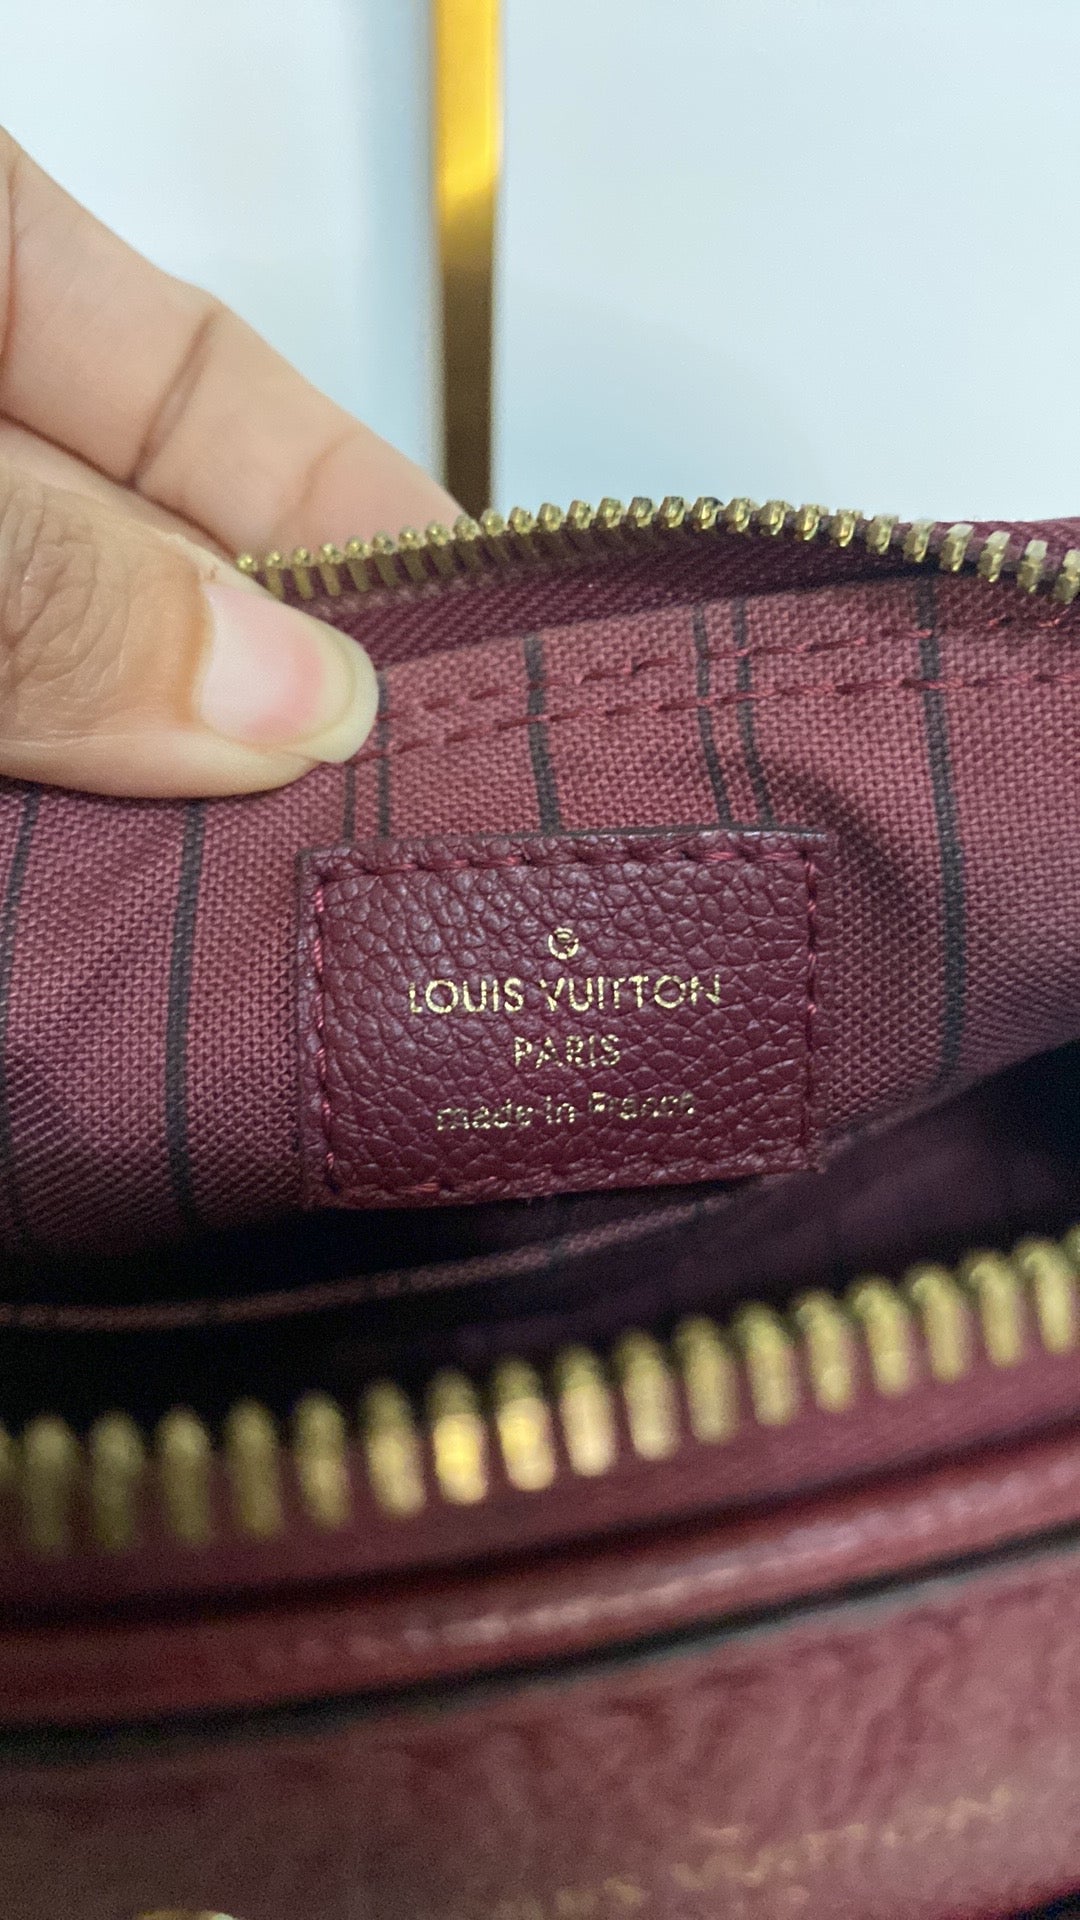 Louis Vuitton Empreinte Speedy 25 Bandouliere NM Aurore